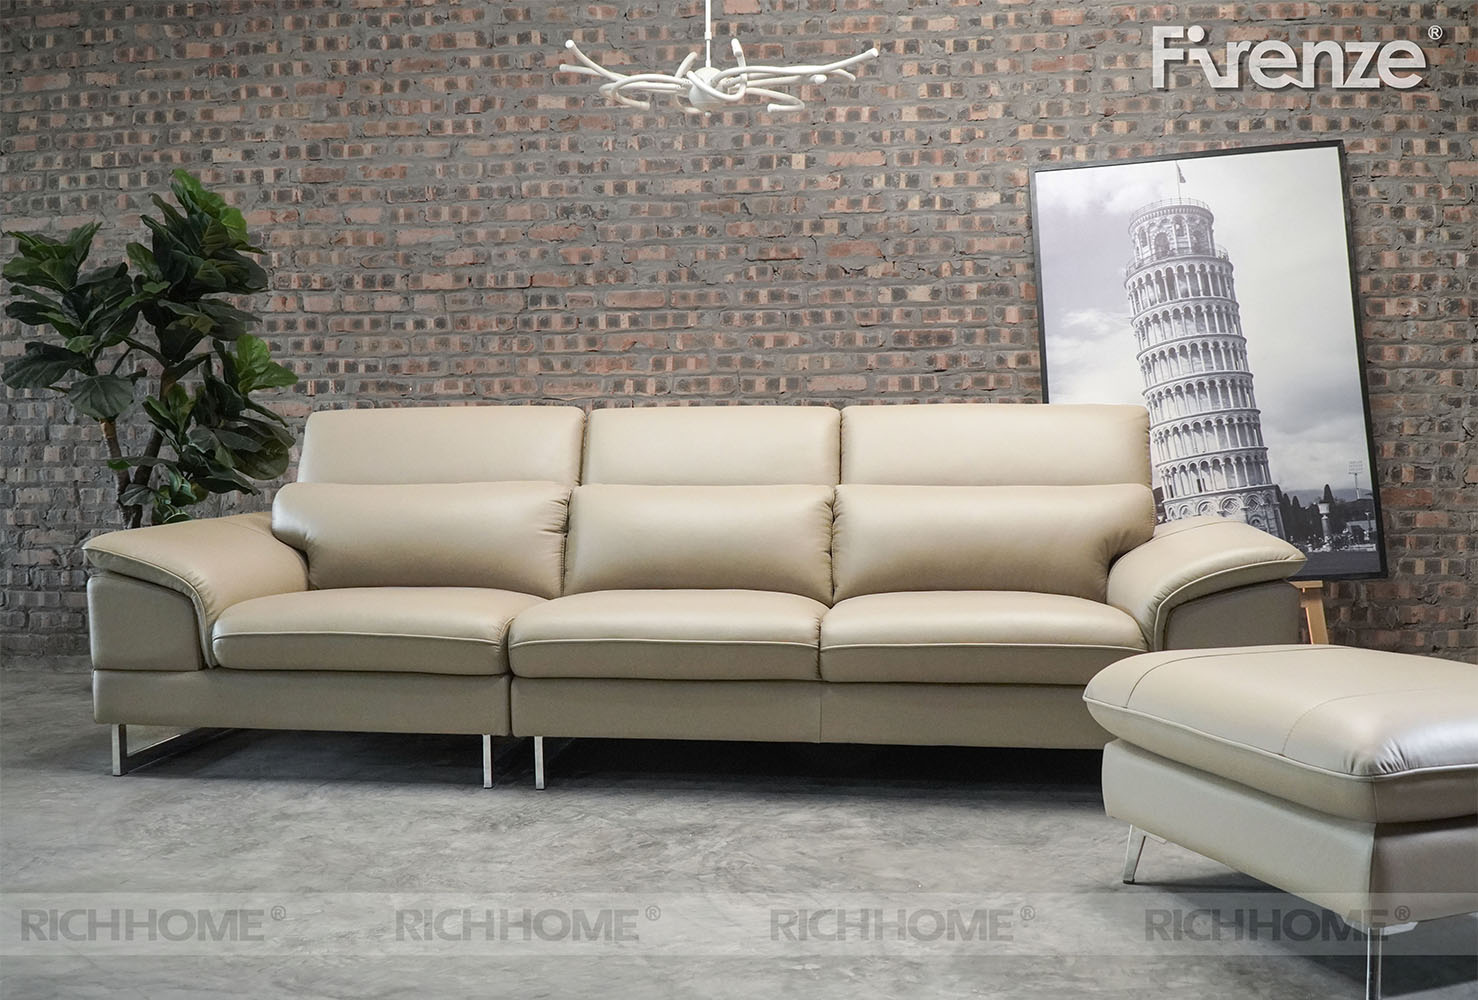 5 mẫu ghế sofa văng da đẹp nhất dành cho phòng khách nhỏ - Ảnh 2